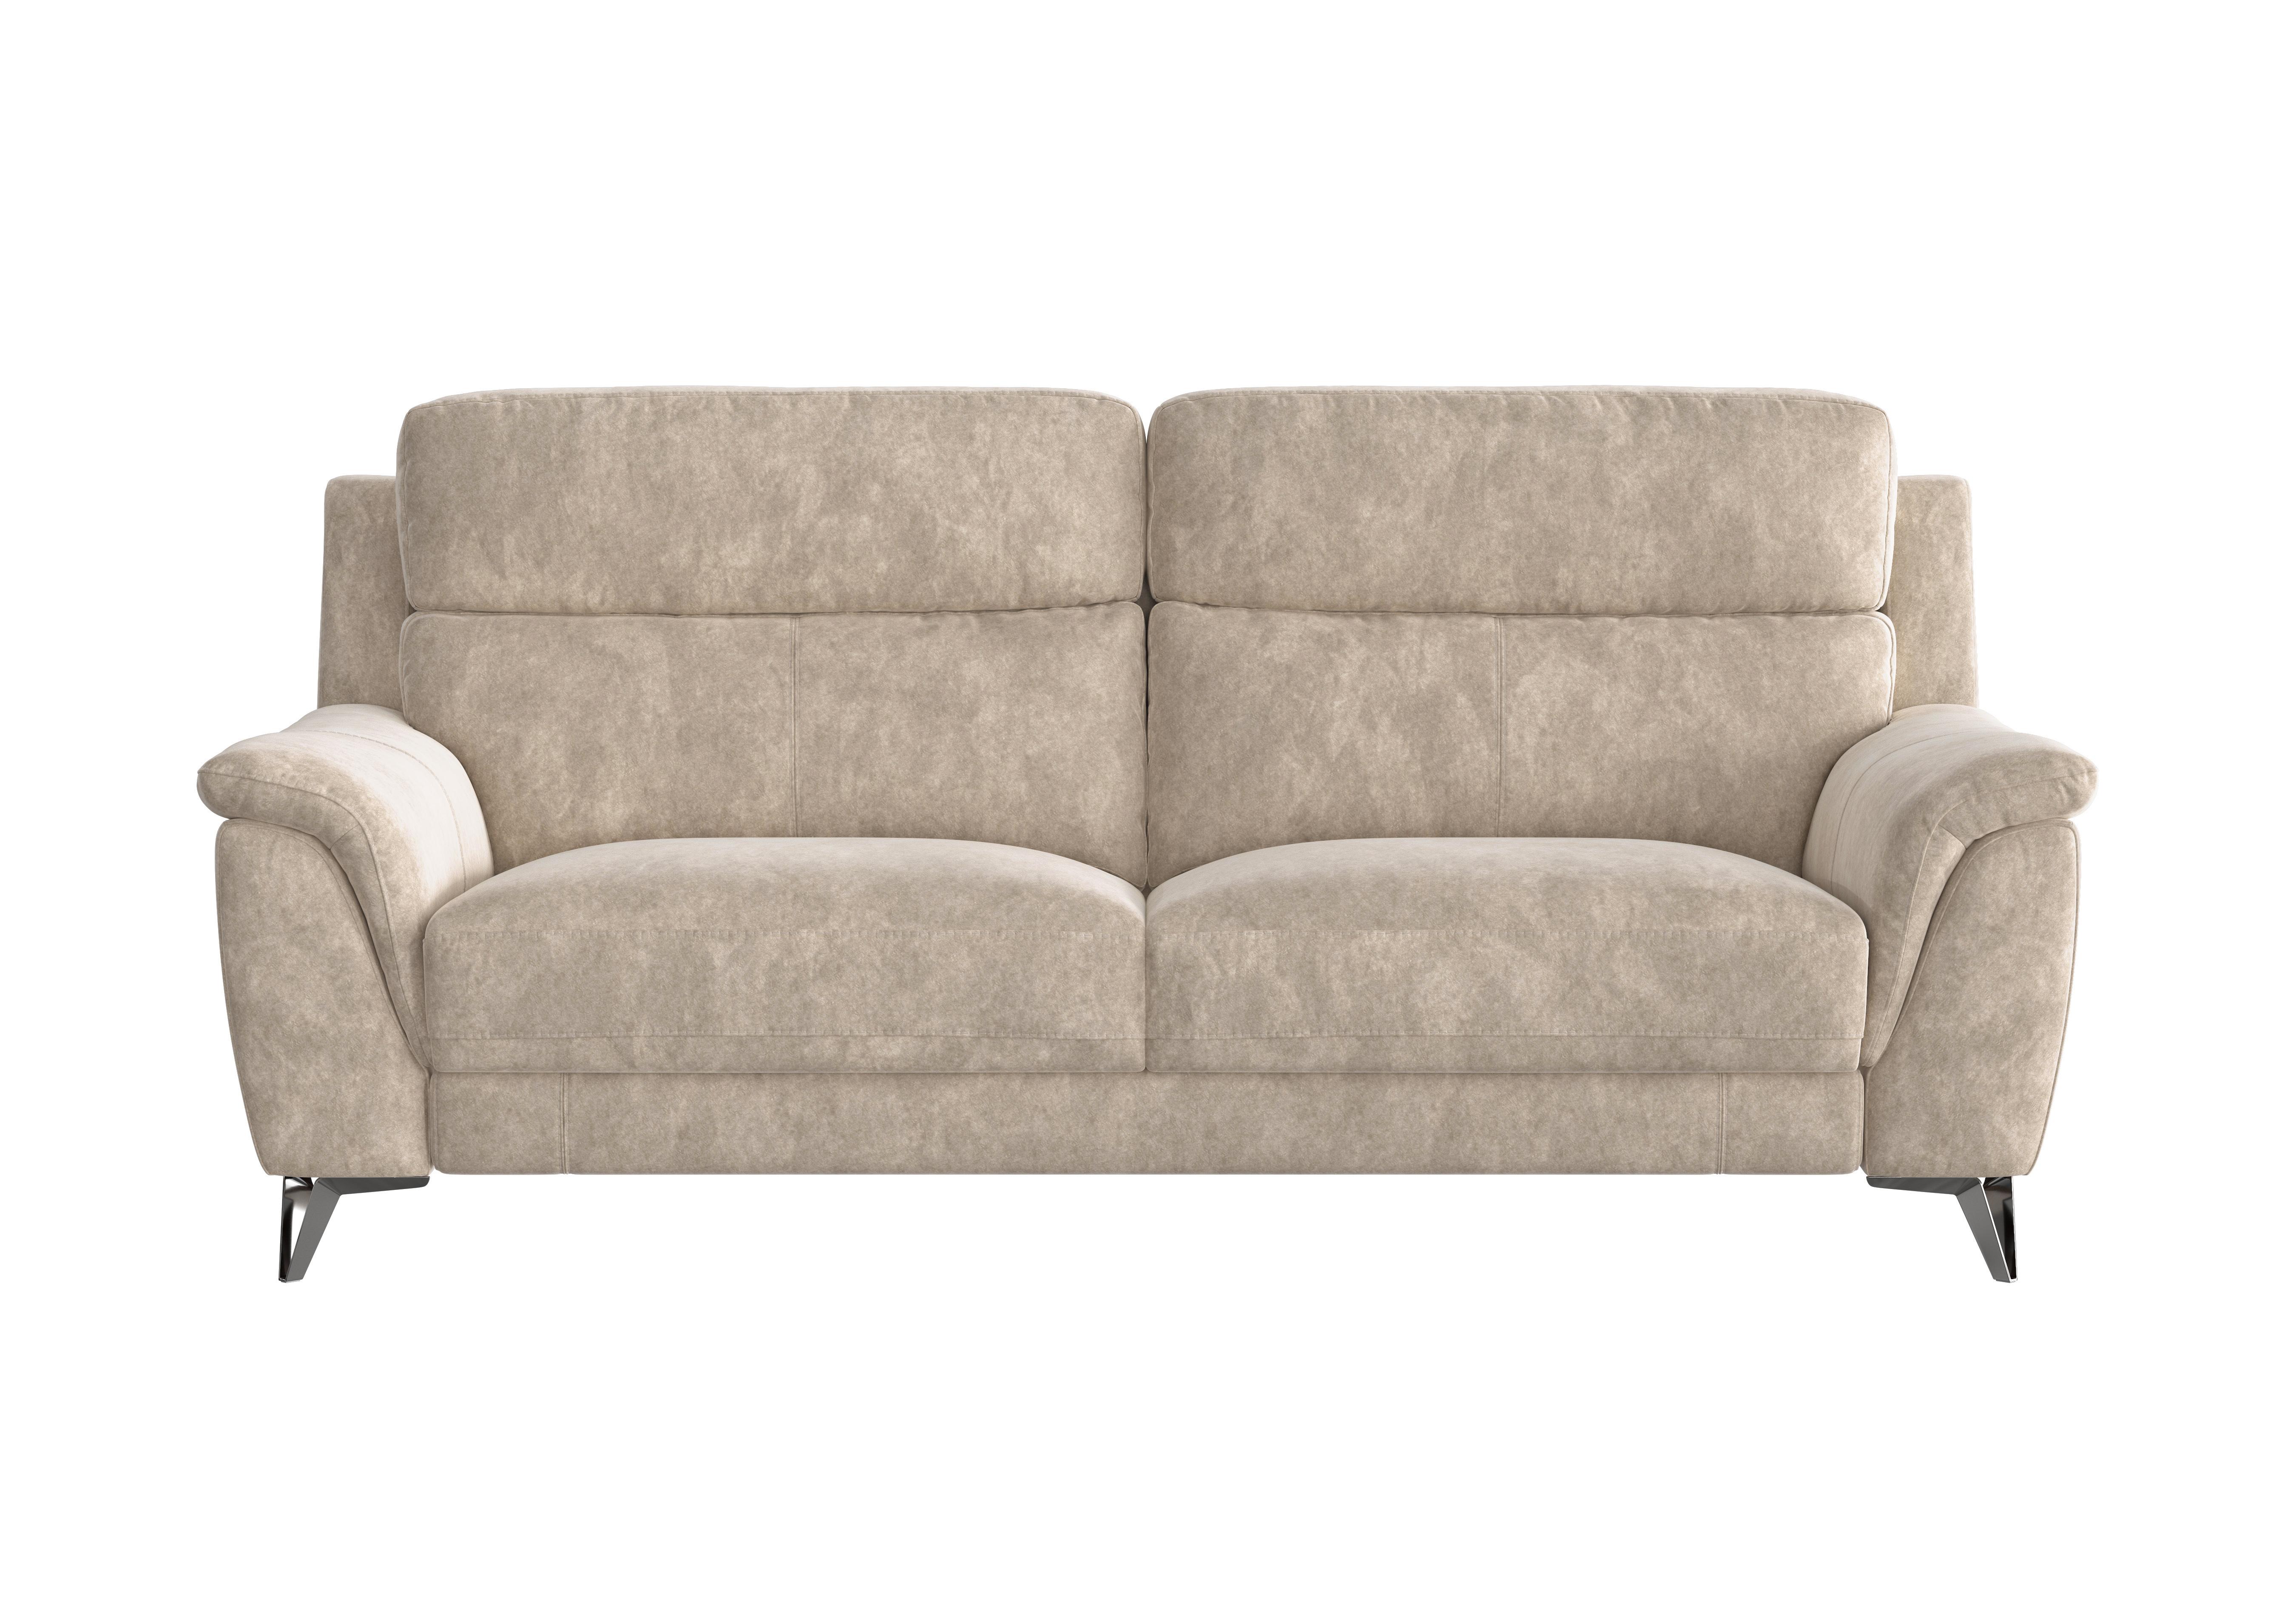 Contempo 3 Seater Fabric Sofa in Bfa-Bnn-R26 Fv2 Cream on Furniture Village